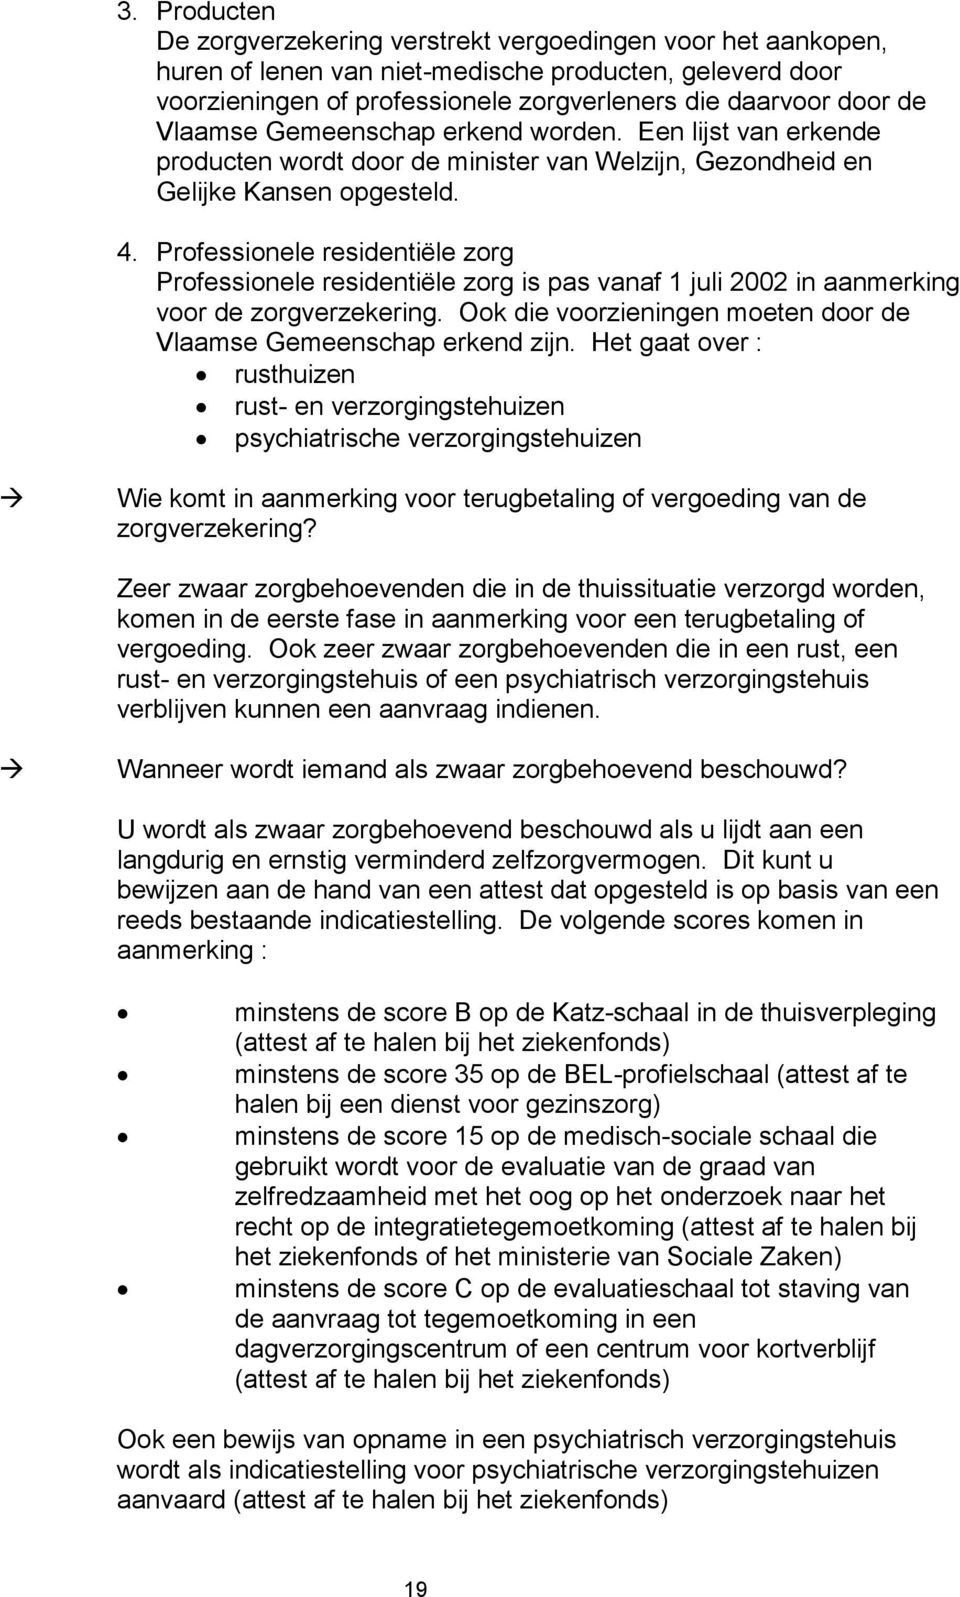 Professionele residentiële zorg Professionele residentiële zorg is pas vanaf 1 juli 2002 in aanmerking voor de zorgverzekering. Ook die voorzieningen moeten door de Vlaamse Gemeenschap erkend zijn.